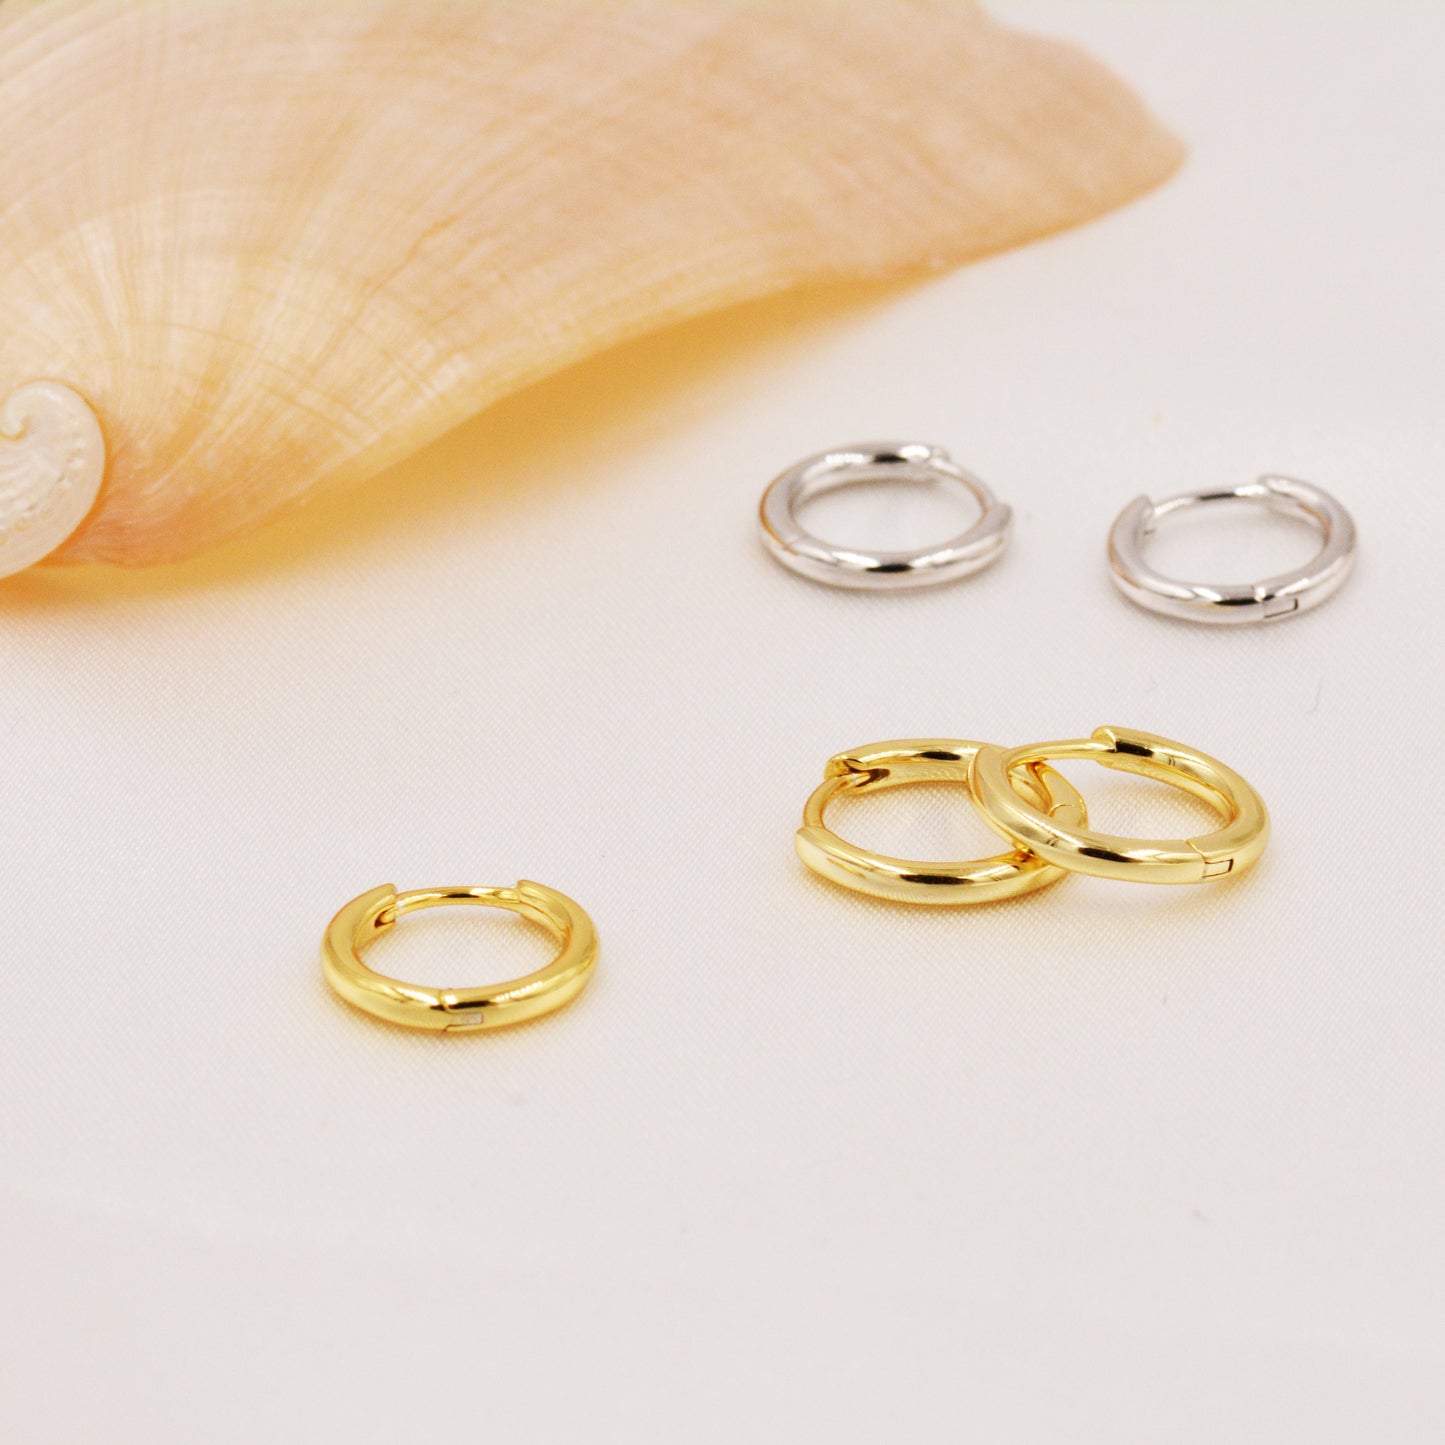 Minimalist Huggie Hoops in Sterling Silver, 7mm,  8mm and 9mm Skinny Hoops, Silver or Gold, Simple Hoop Earrings